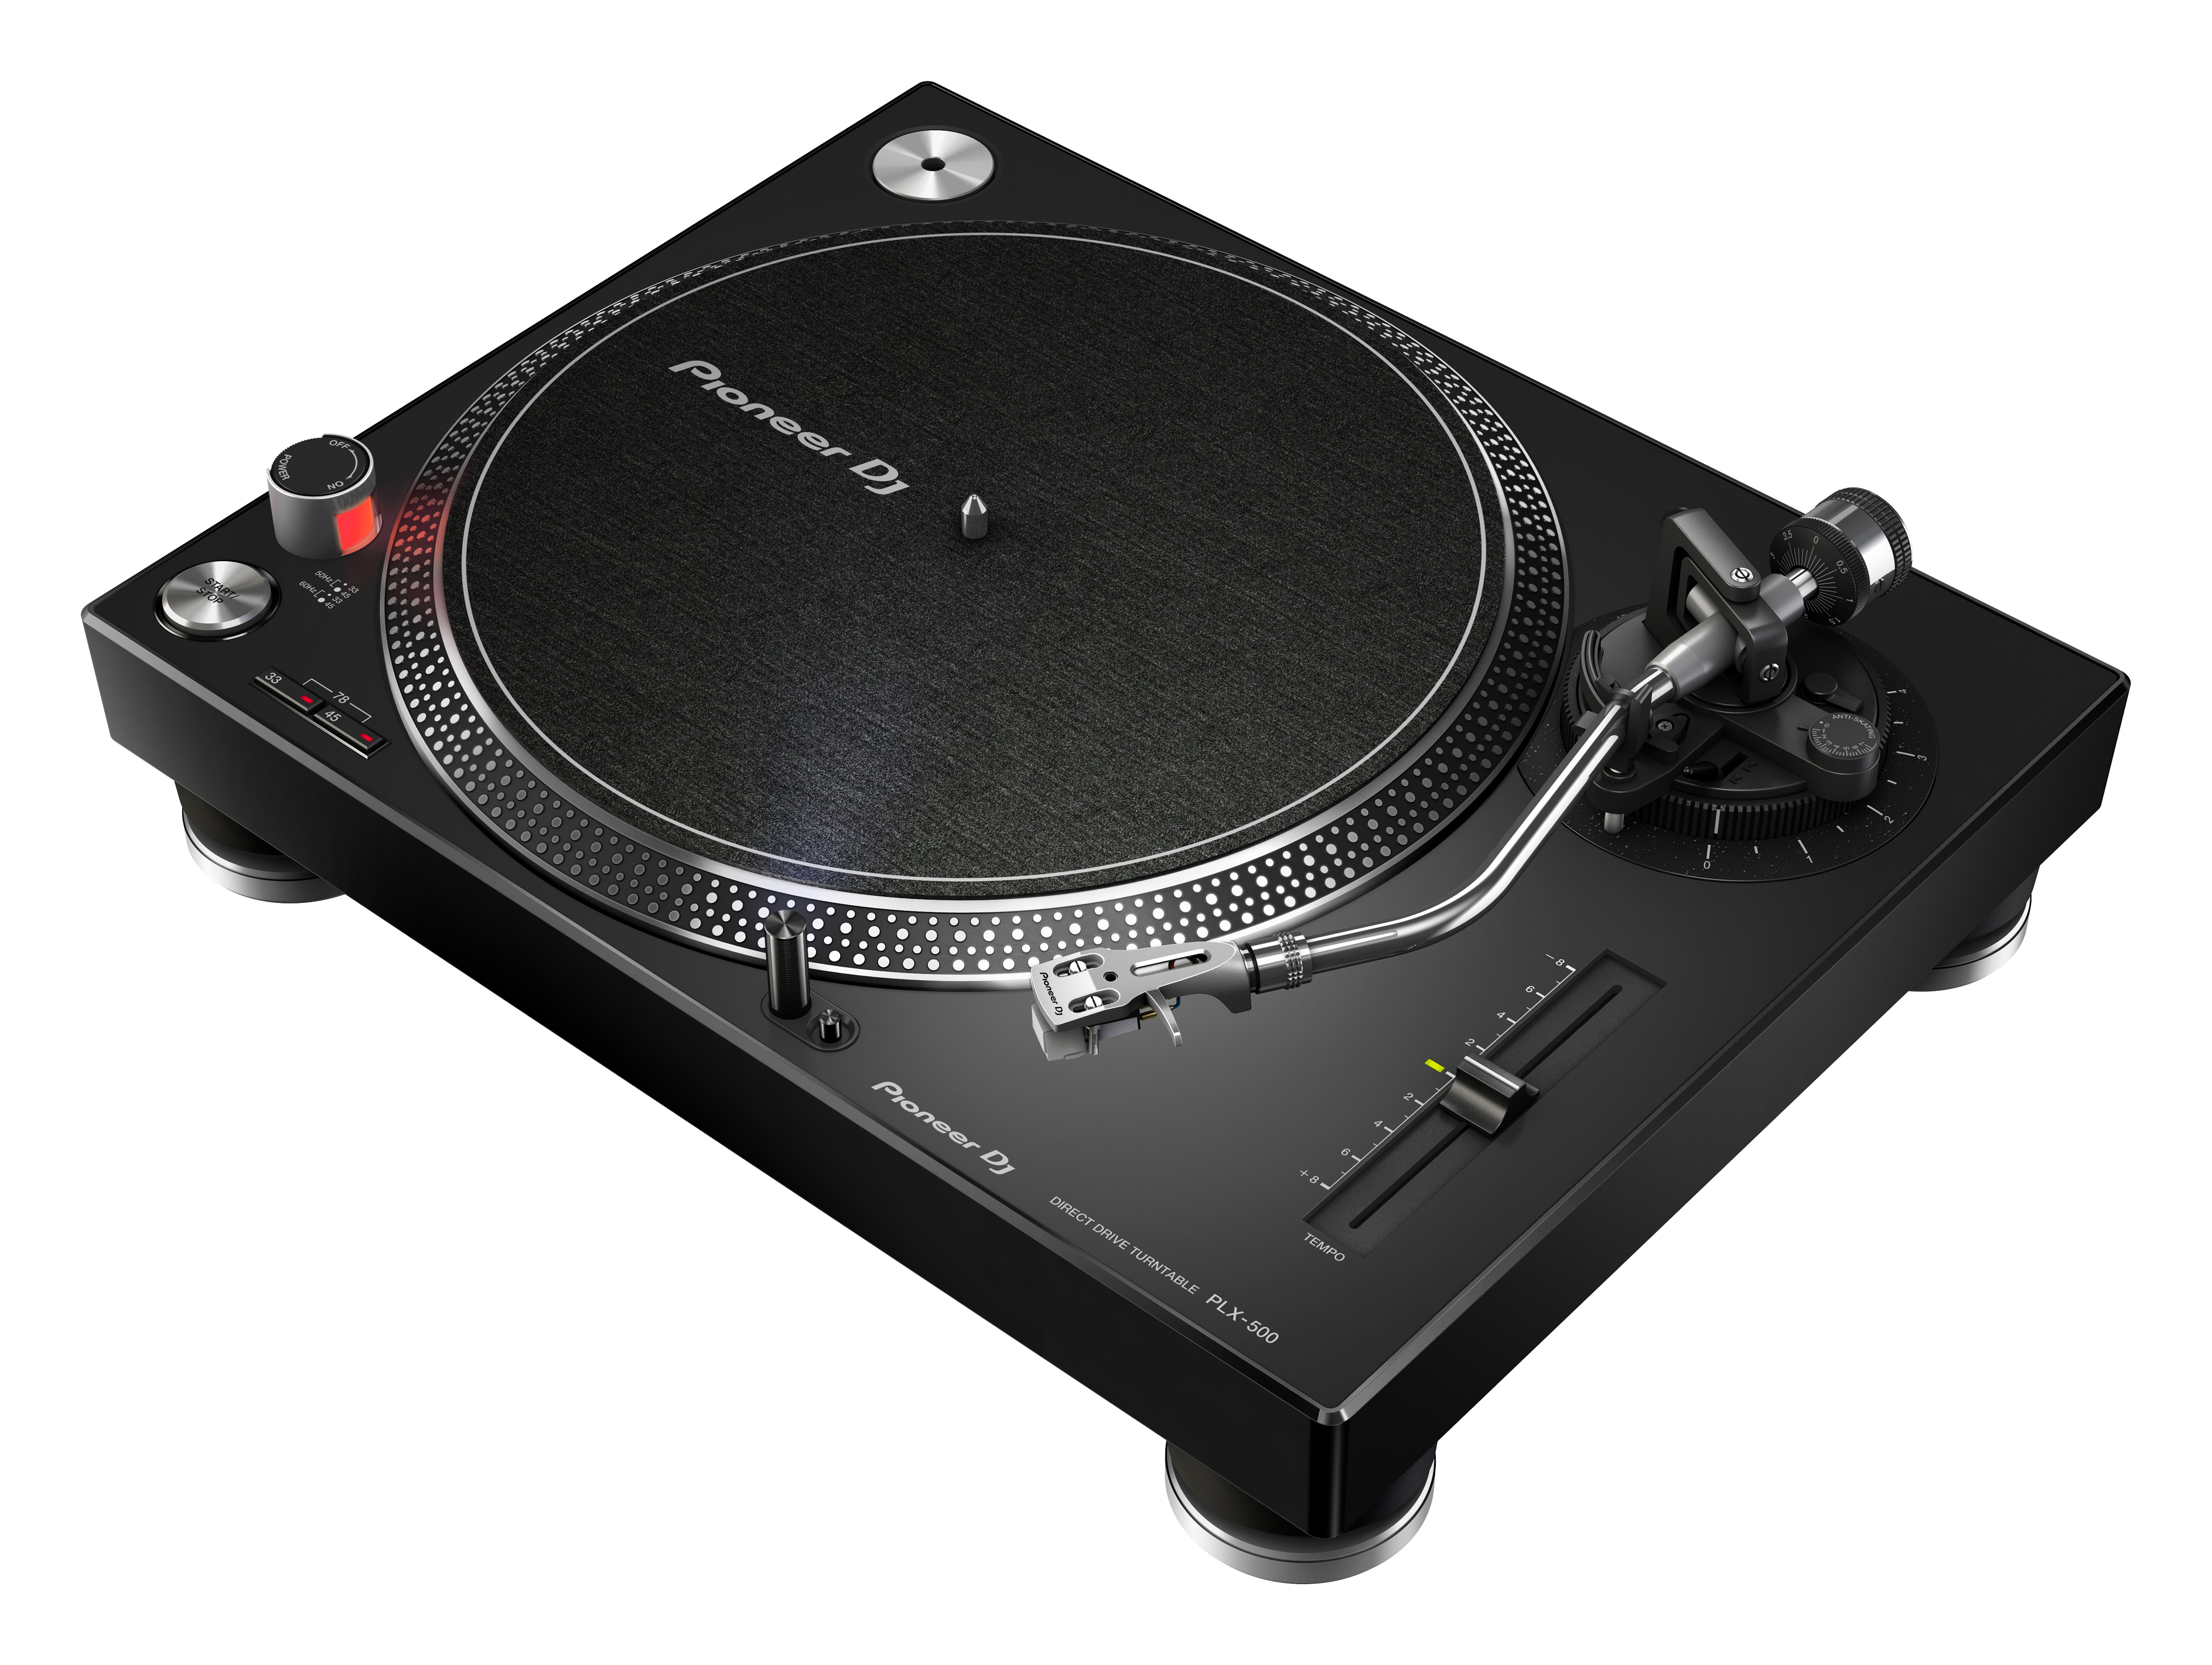 PIONEER DJ PLX-500-K Plattenspieler, Schwarz